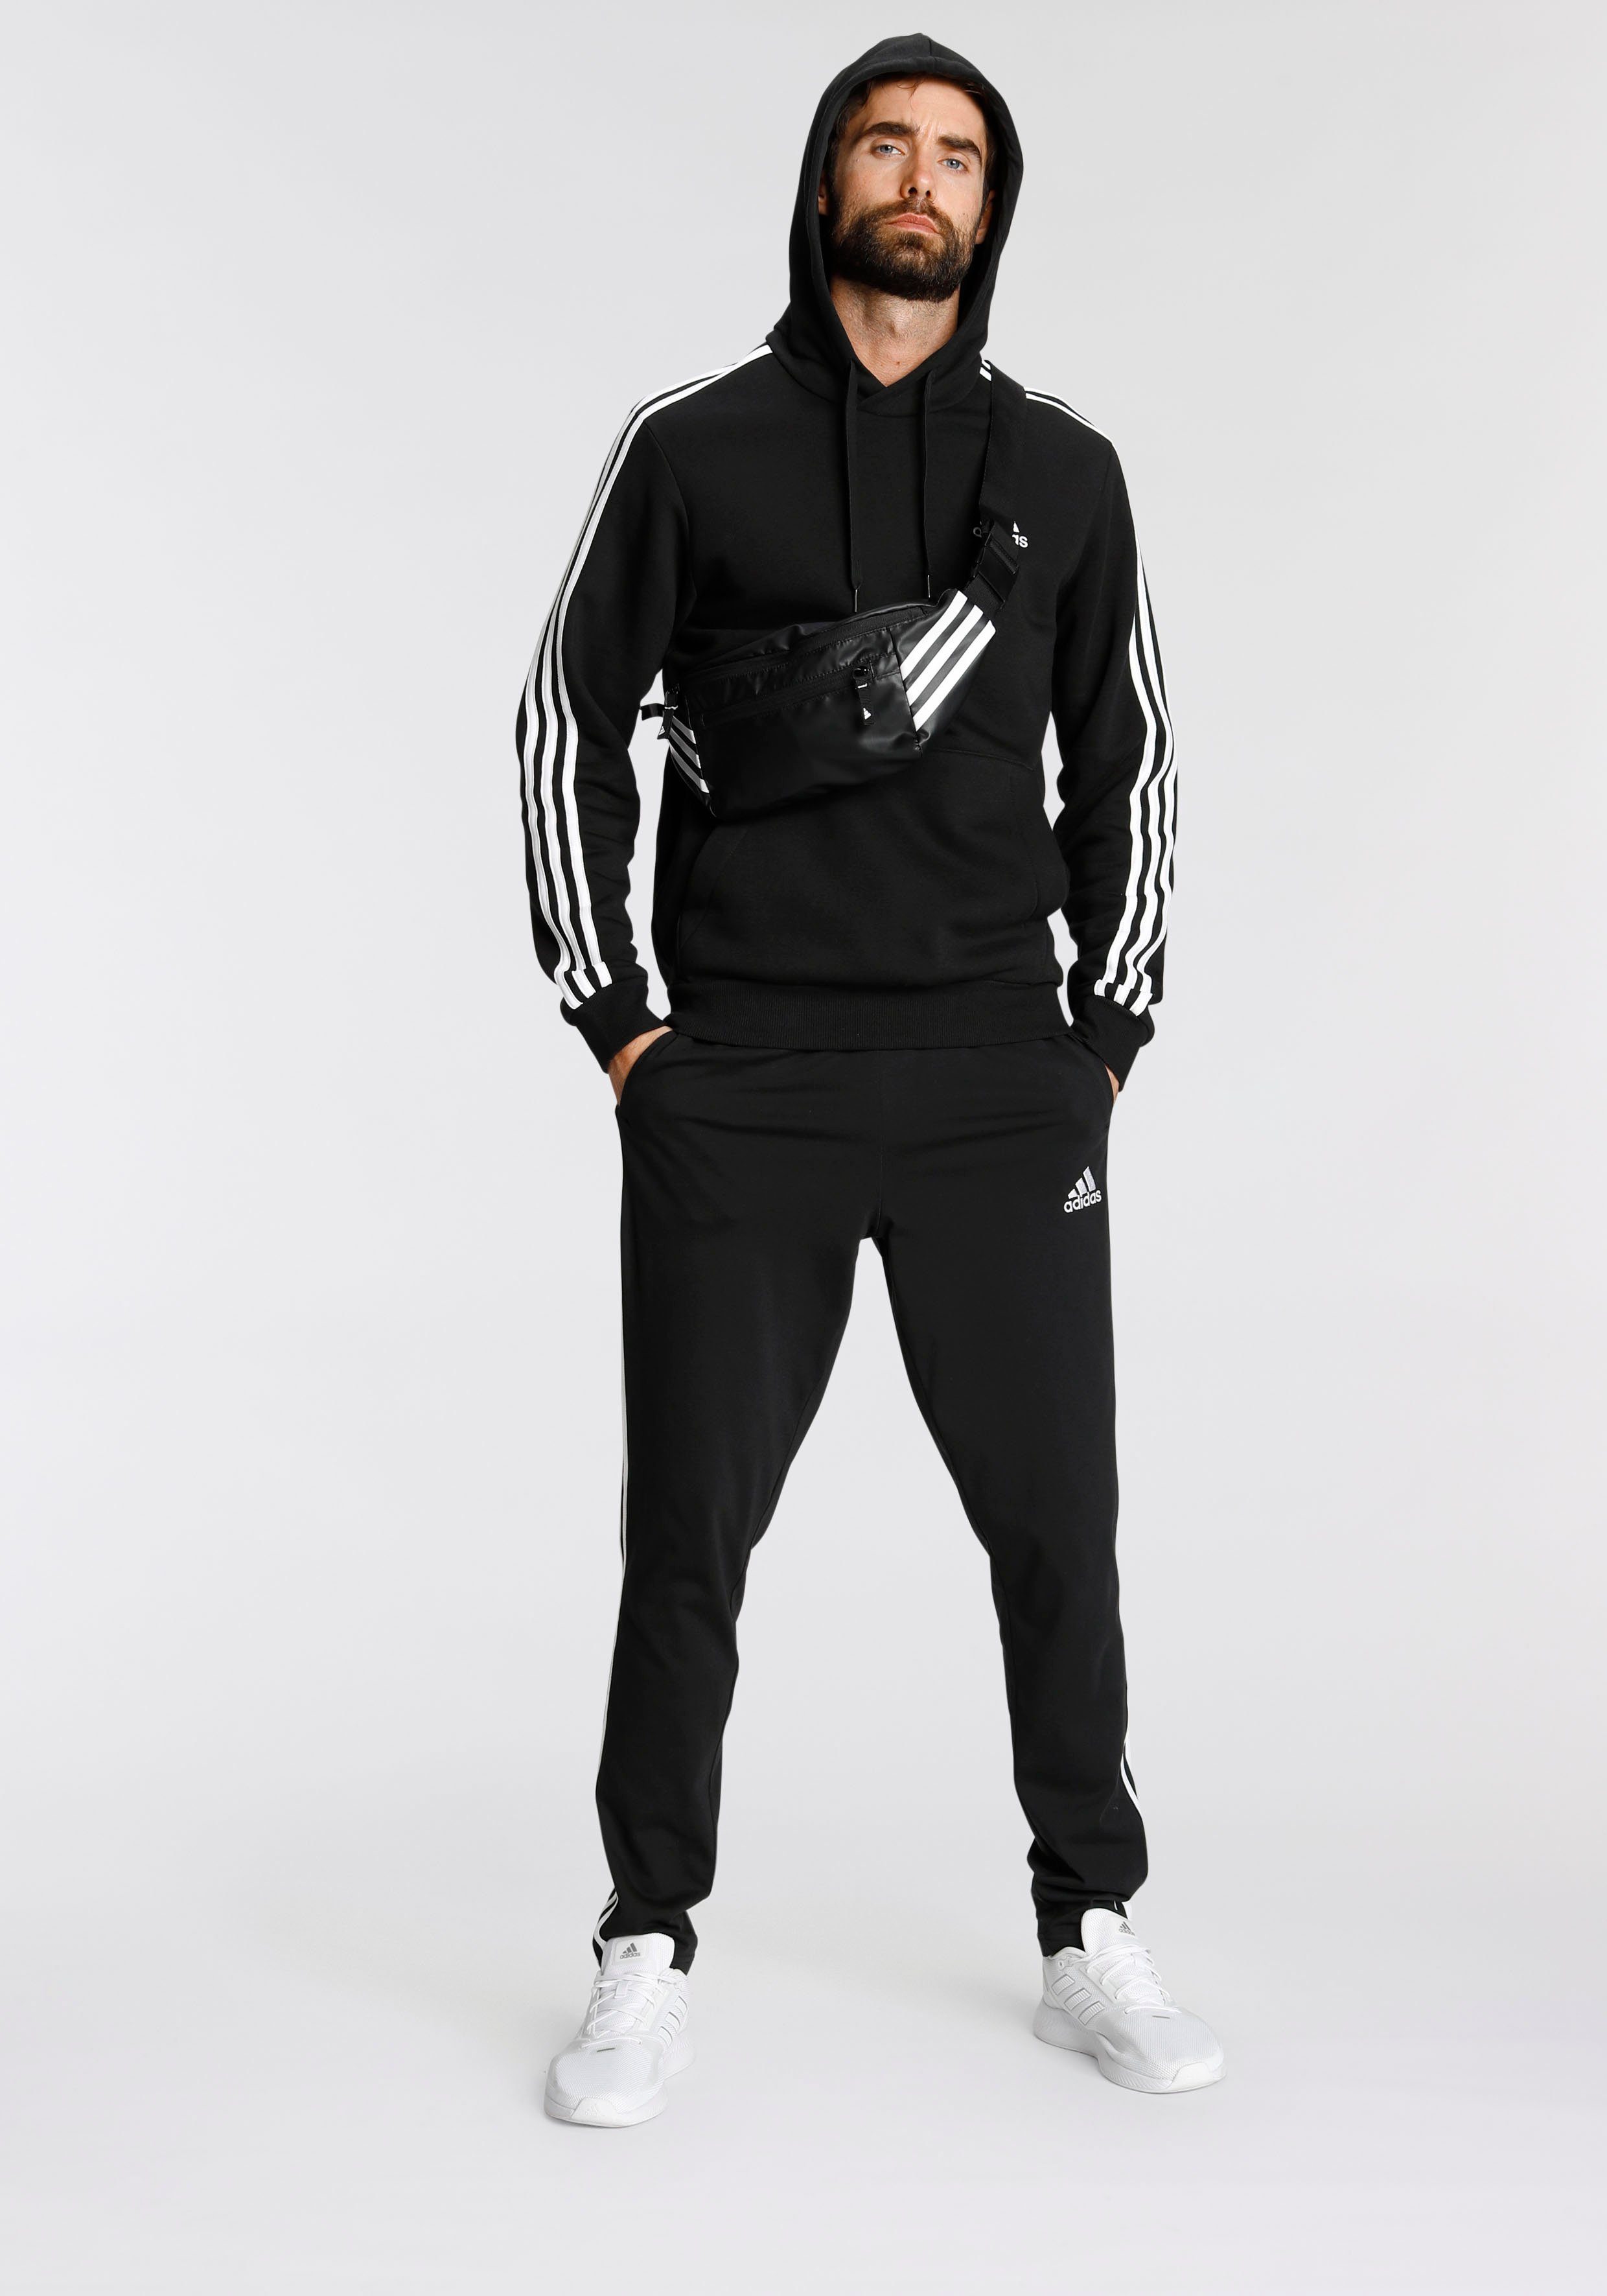 White ESSENTIALS HOODIE / adidas FLEECE Black Sportswear Sweatshirt 3STREIFEN